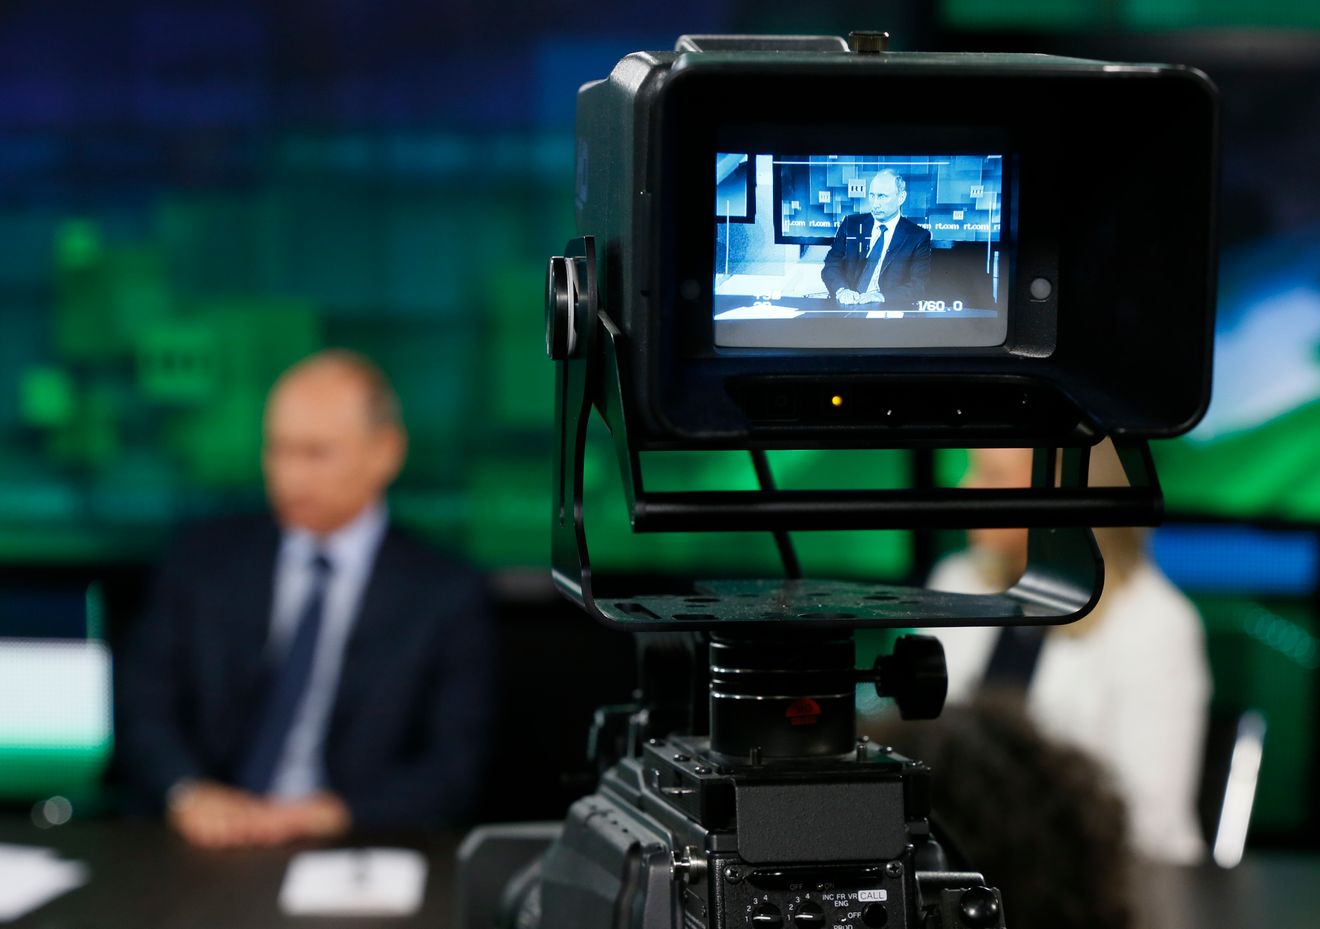 Guerre en Ukraine : RT et Sputnik dans le viseur de nombreuses applications